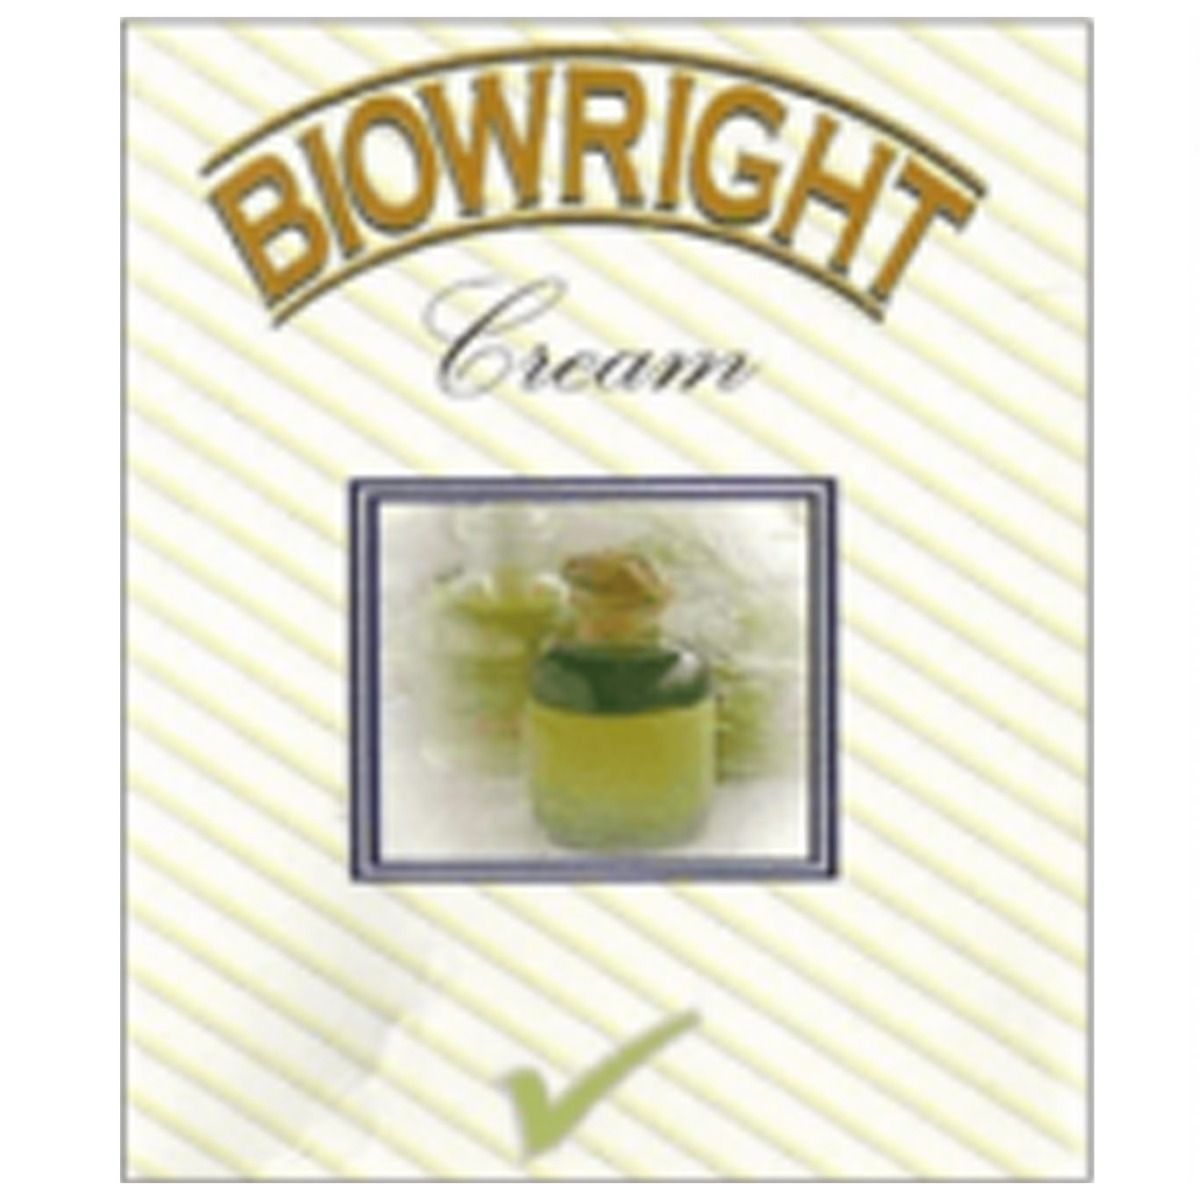 Biowright Cream, 50 gm, Pack of 1 